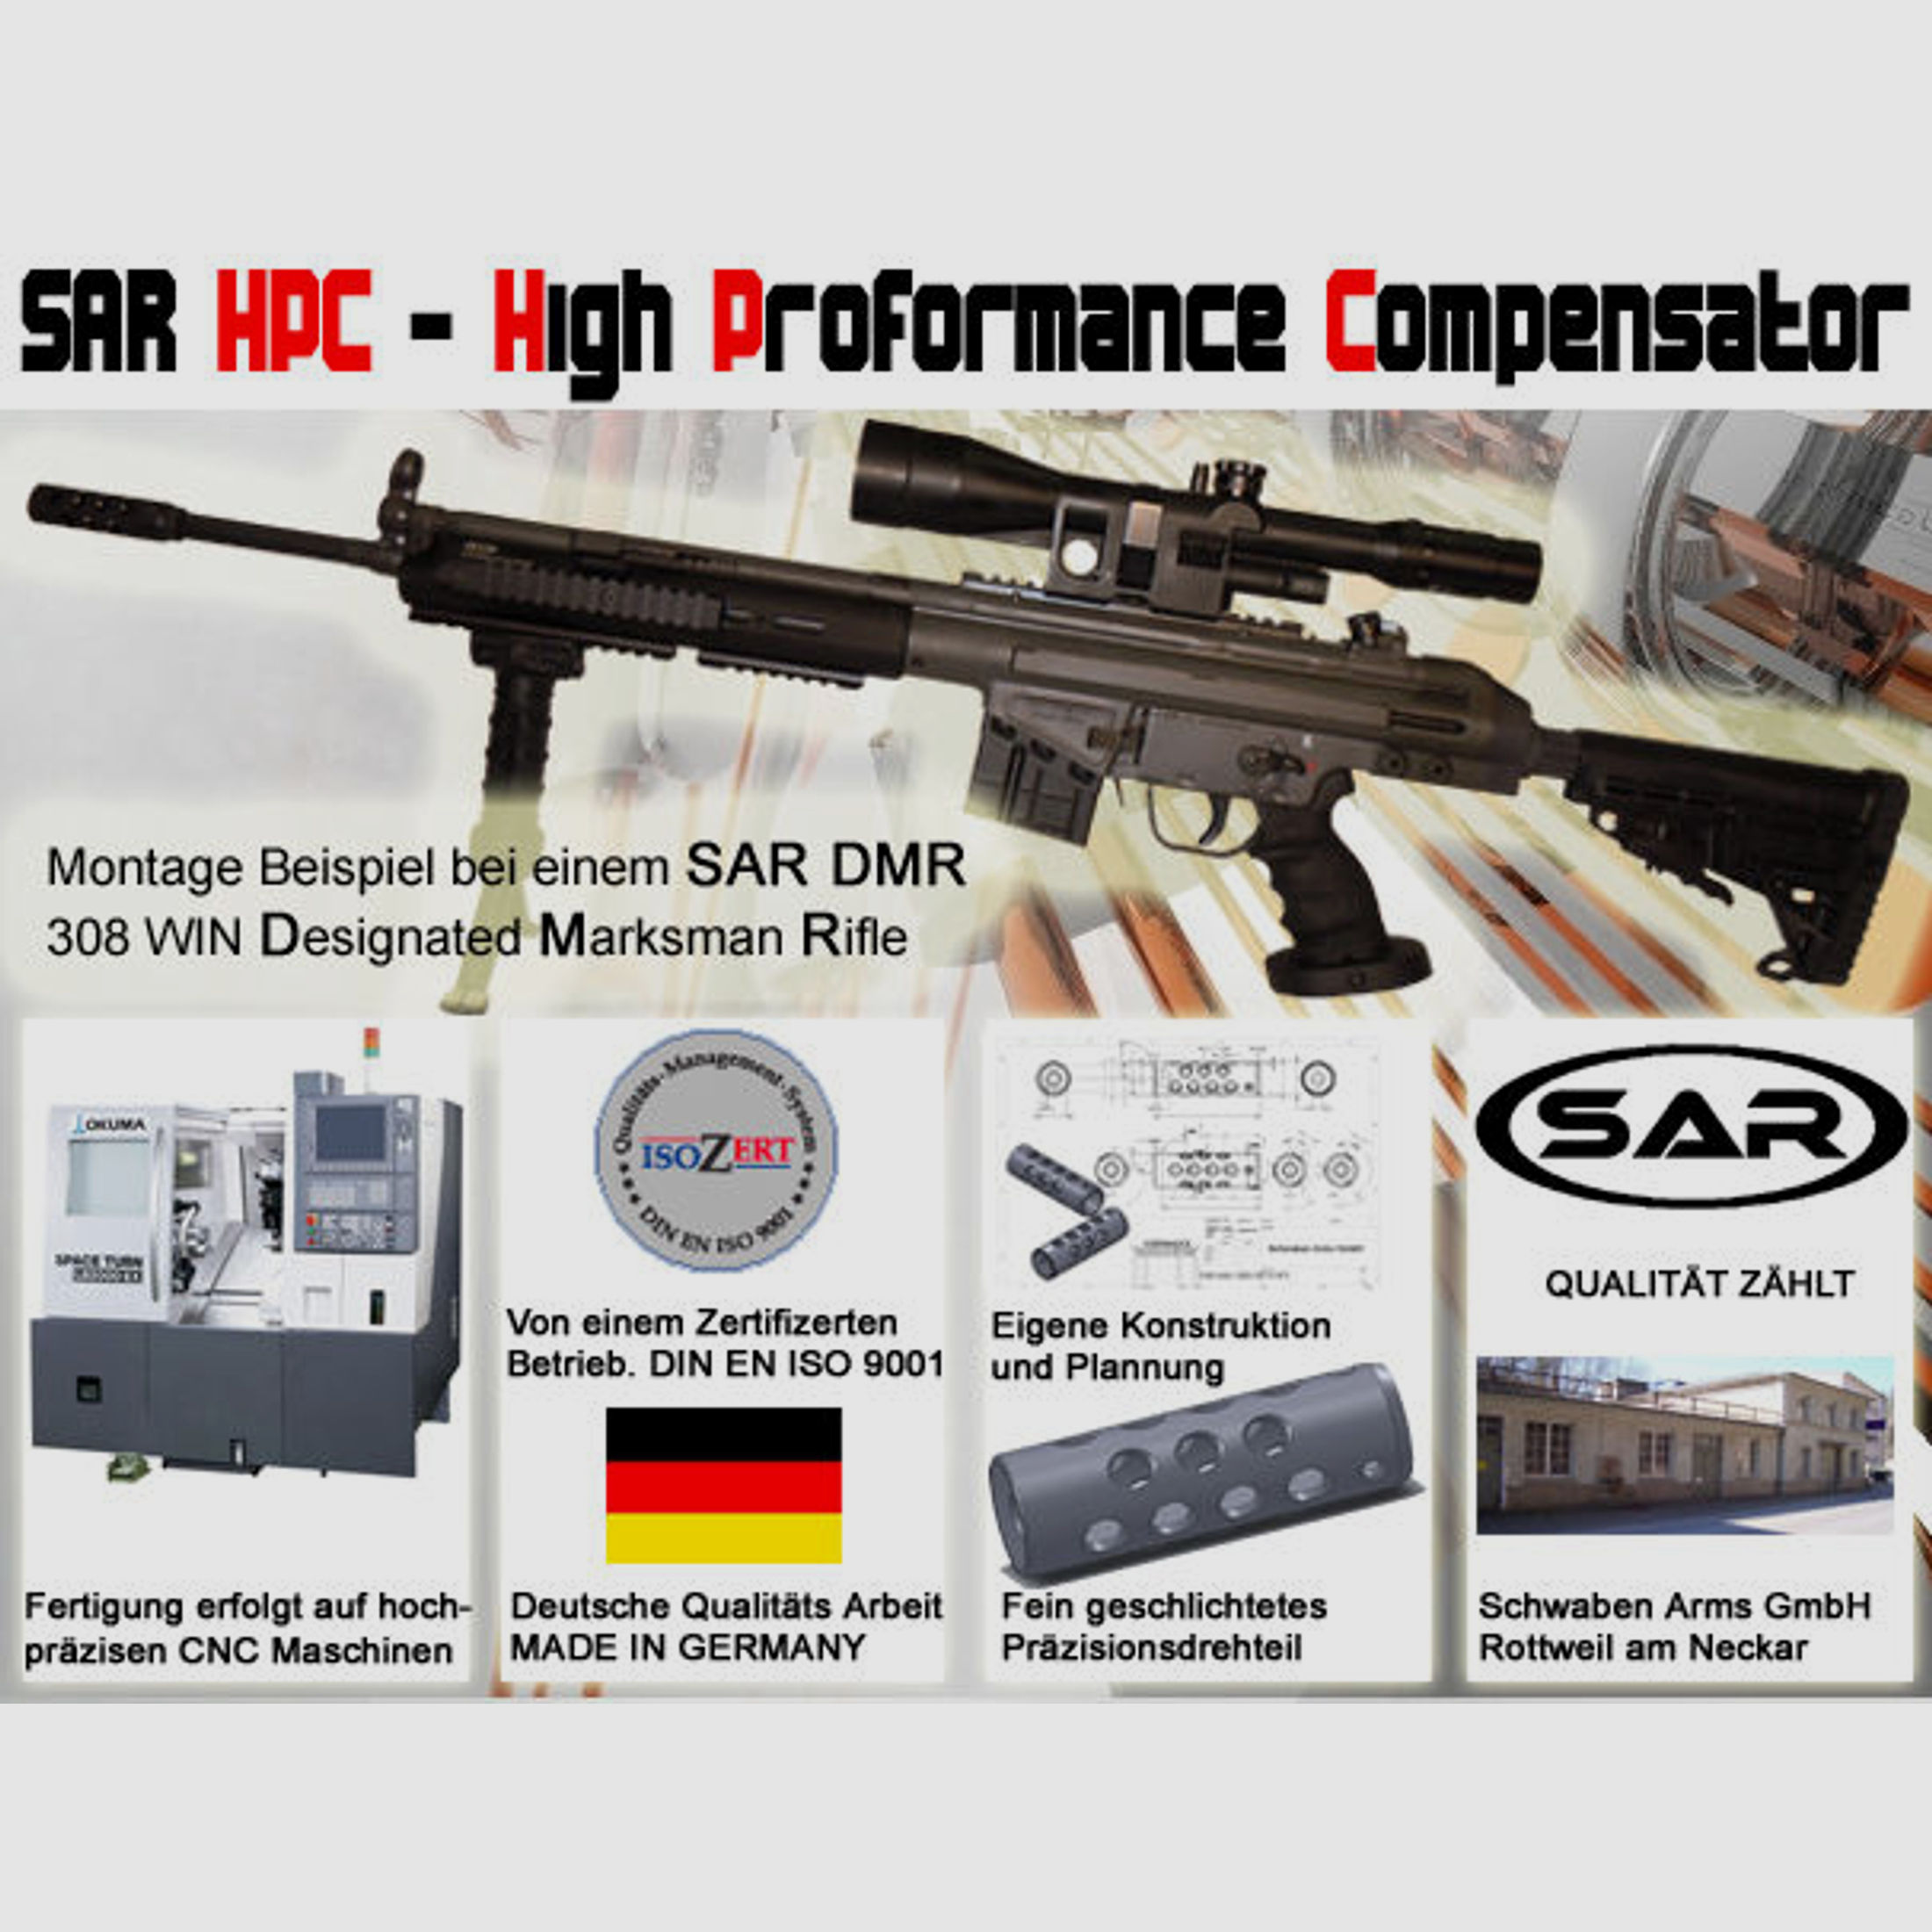 Schwaben Arms GmbH	 SAR M41 Komplettset mit Bodenstück Adapter und TDI, CBS, CAA Schaft für SAR M41, HK41, G3/Klone